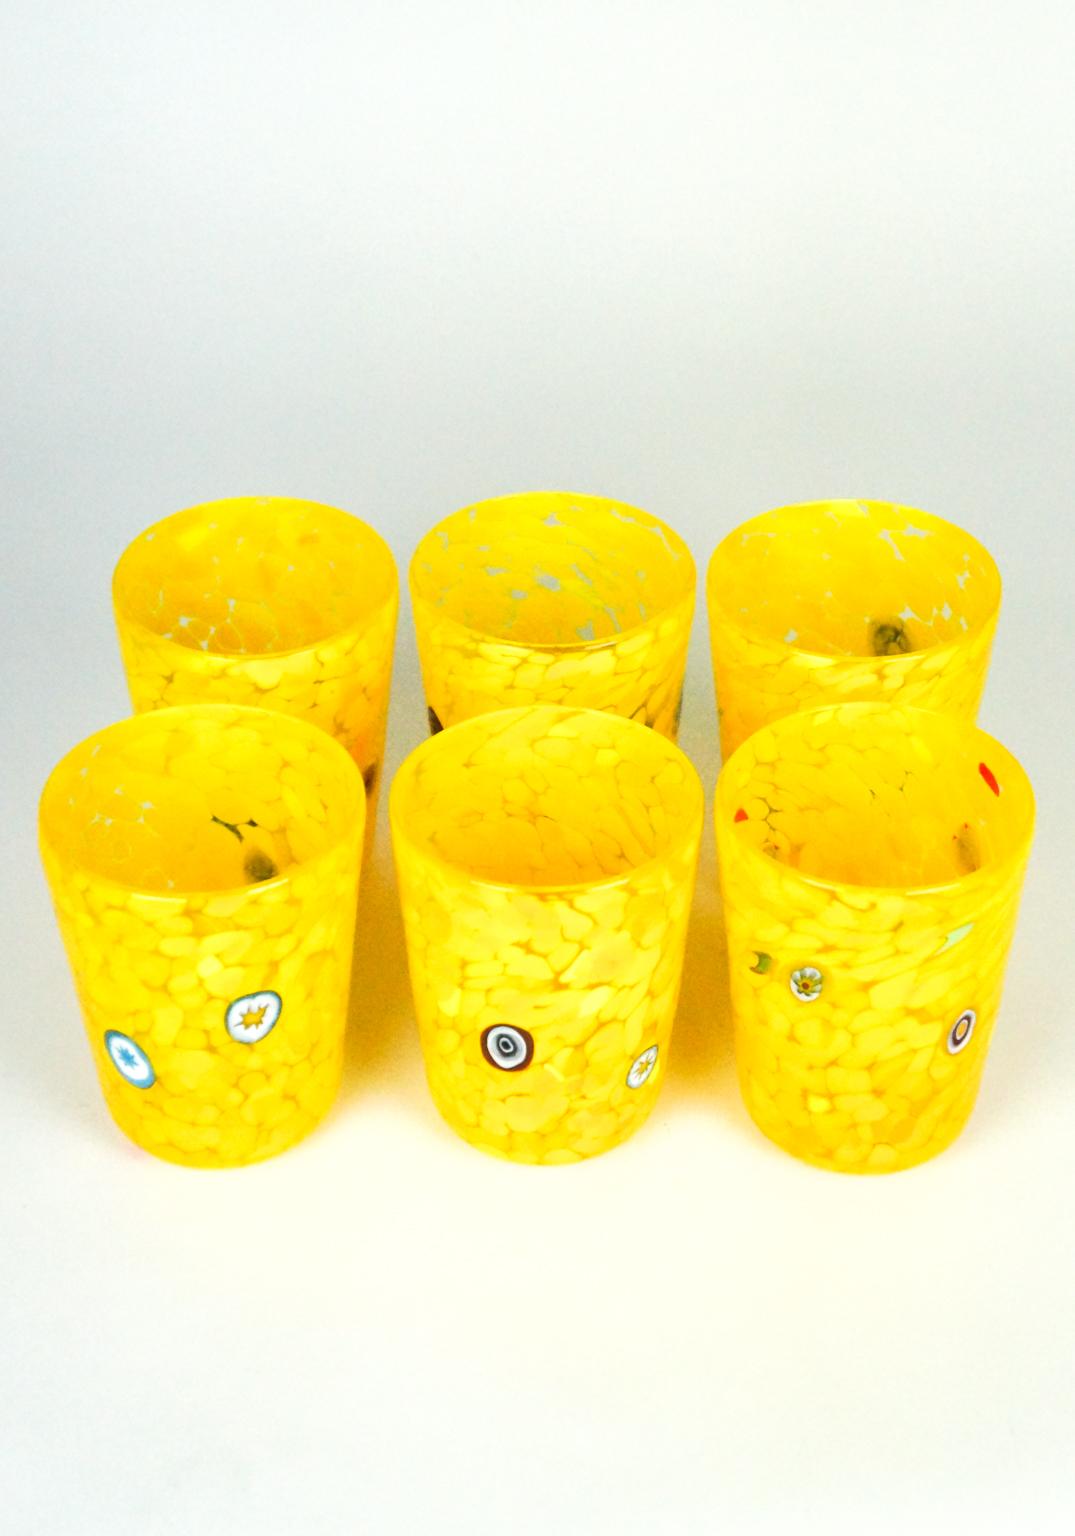 Ensemble de verres jaunes avec décor de murrina Millefiori.
Cet ensemble s'appelle 